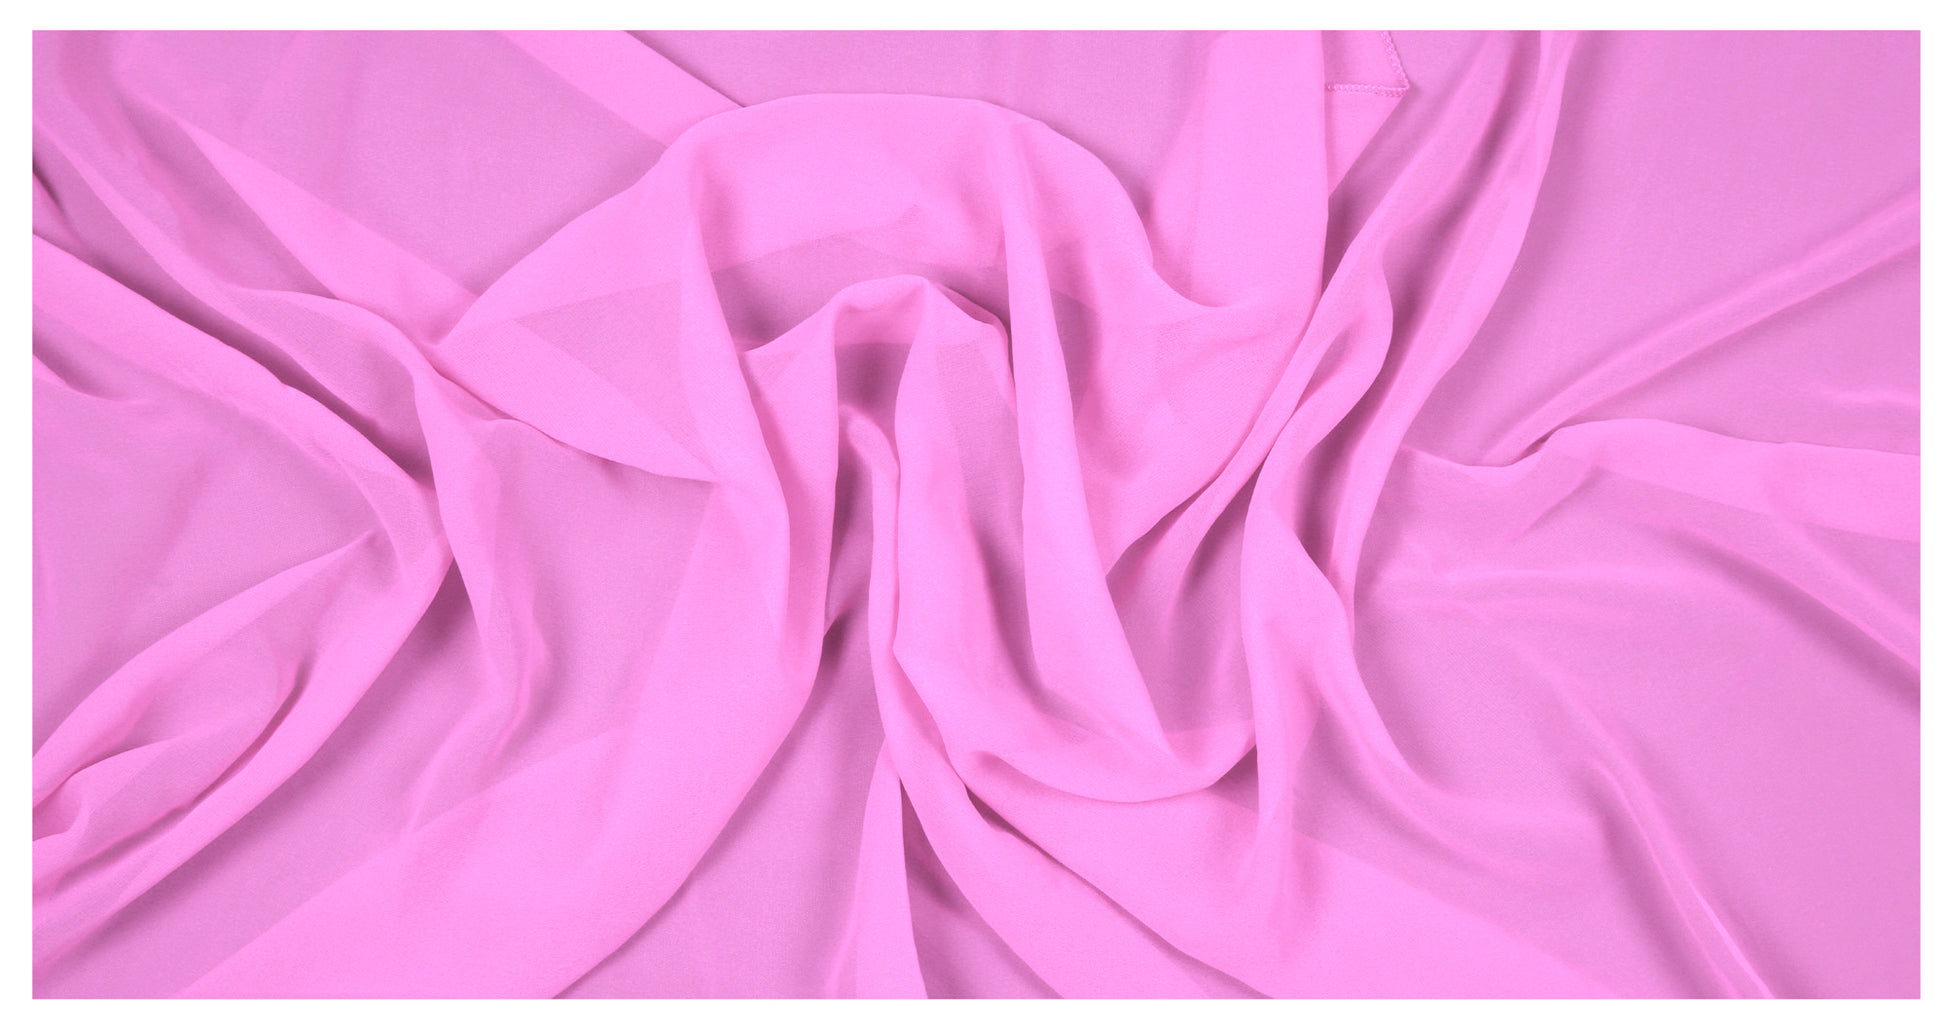 Bubblegum Pink,94f07cee-ed93-4fdd-a0ee-b38f6b0f8c44